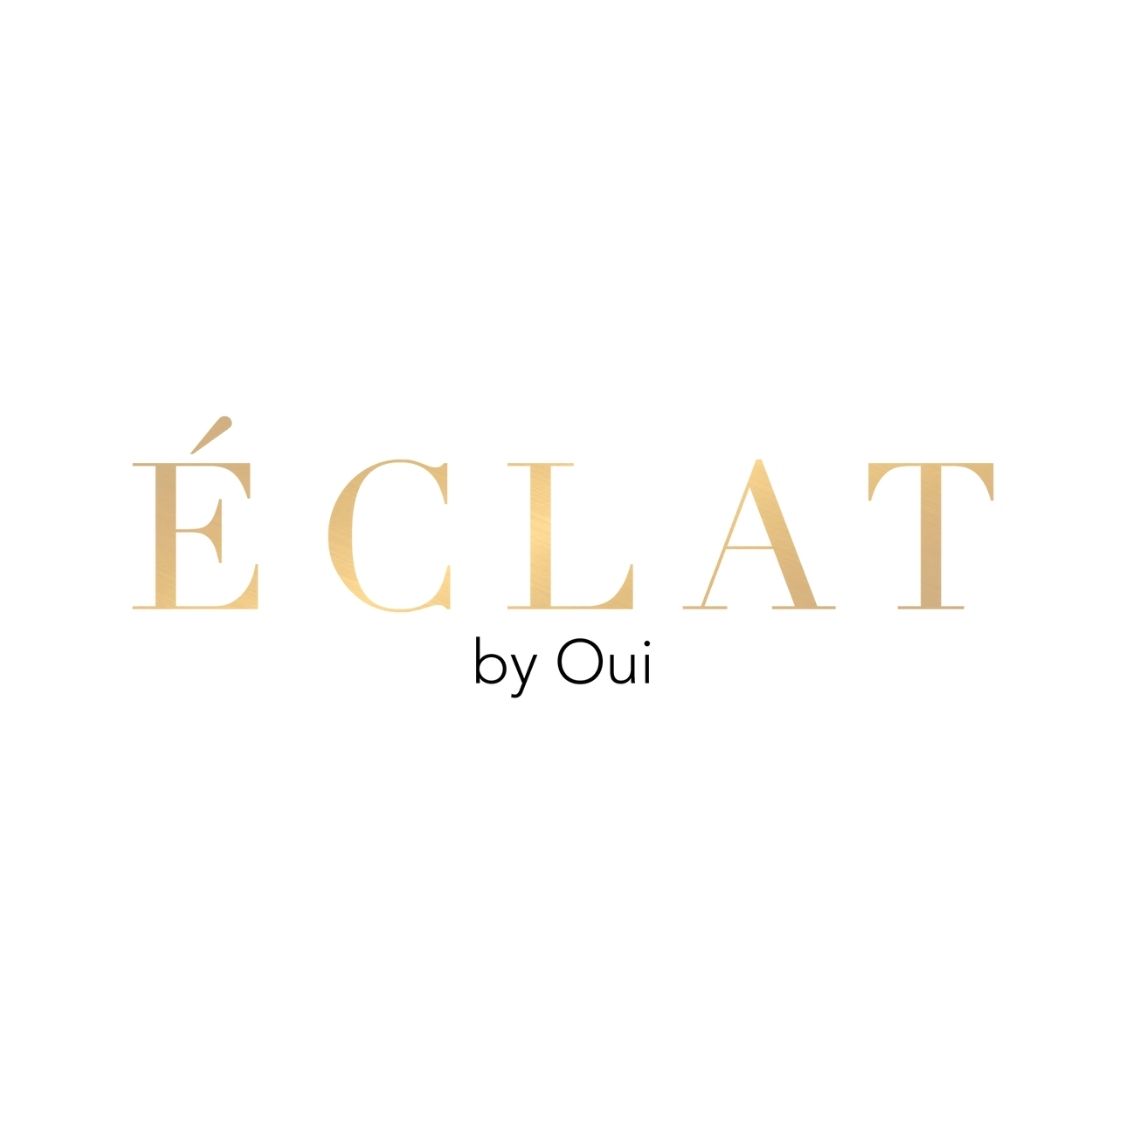 Eclat bt Oui Logo.jpg